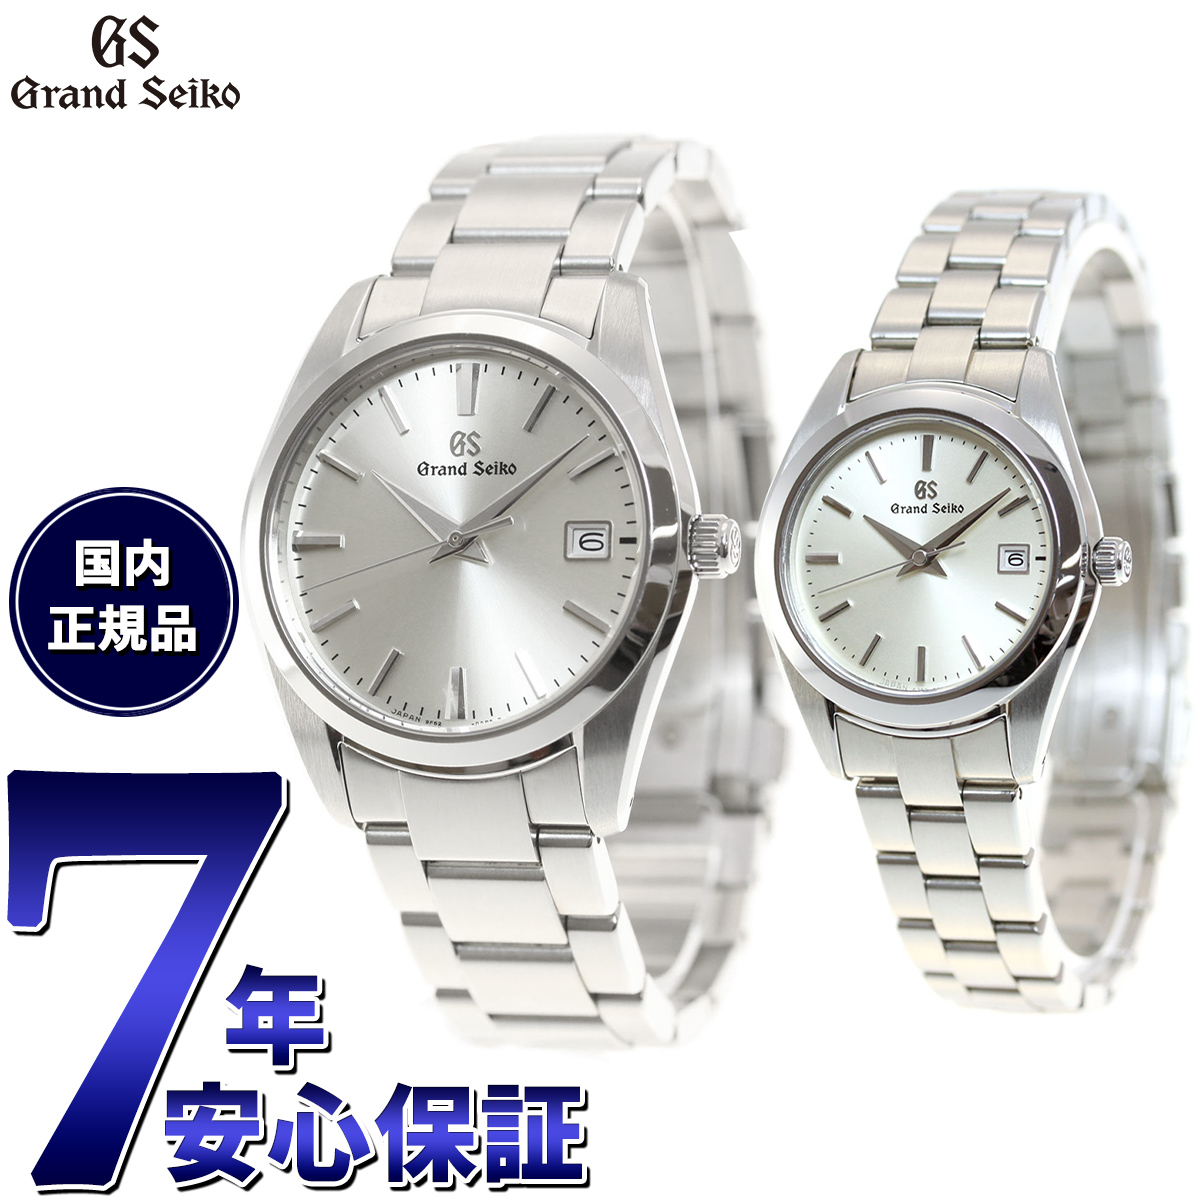  グランドセイコー GRAND SEIKO 腕時計 メンズ レディース SBGX263 STGF265 ペアモデル